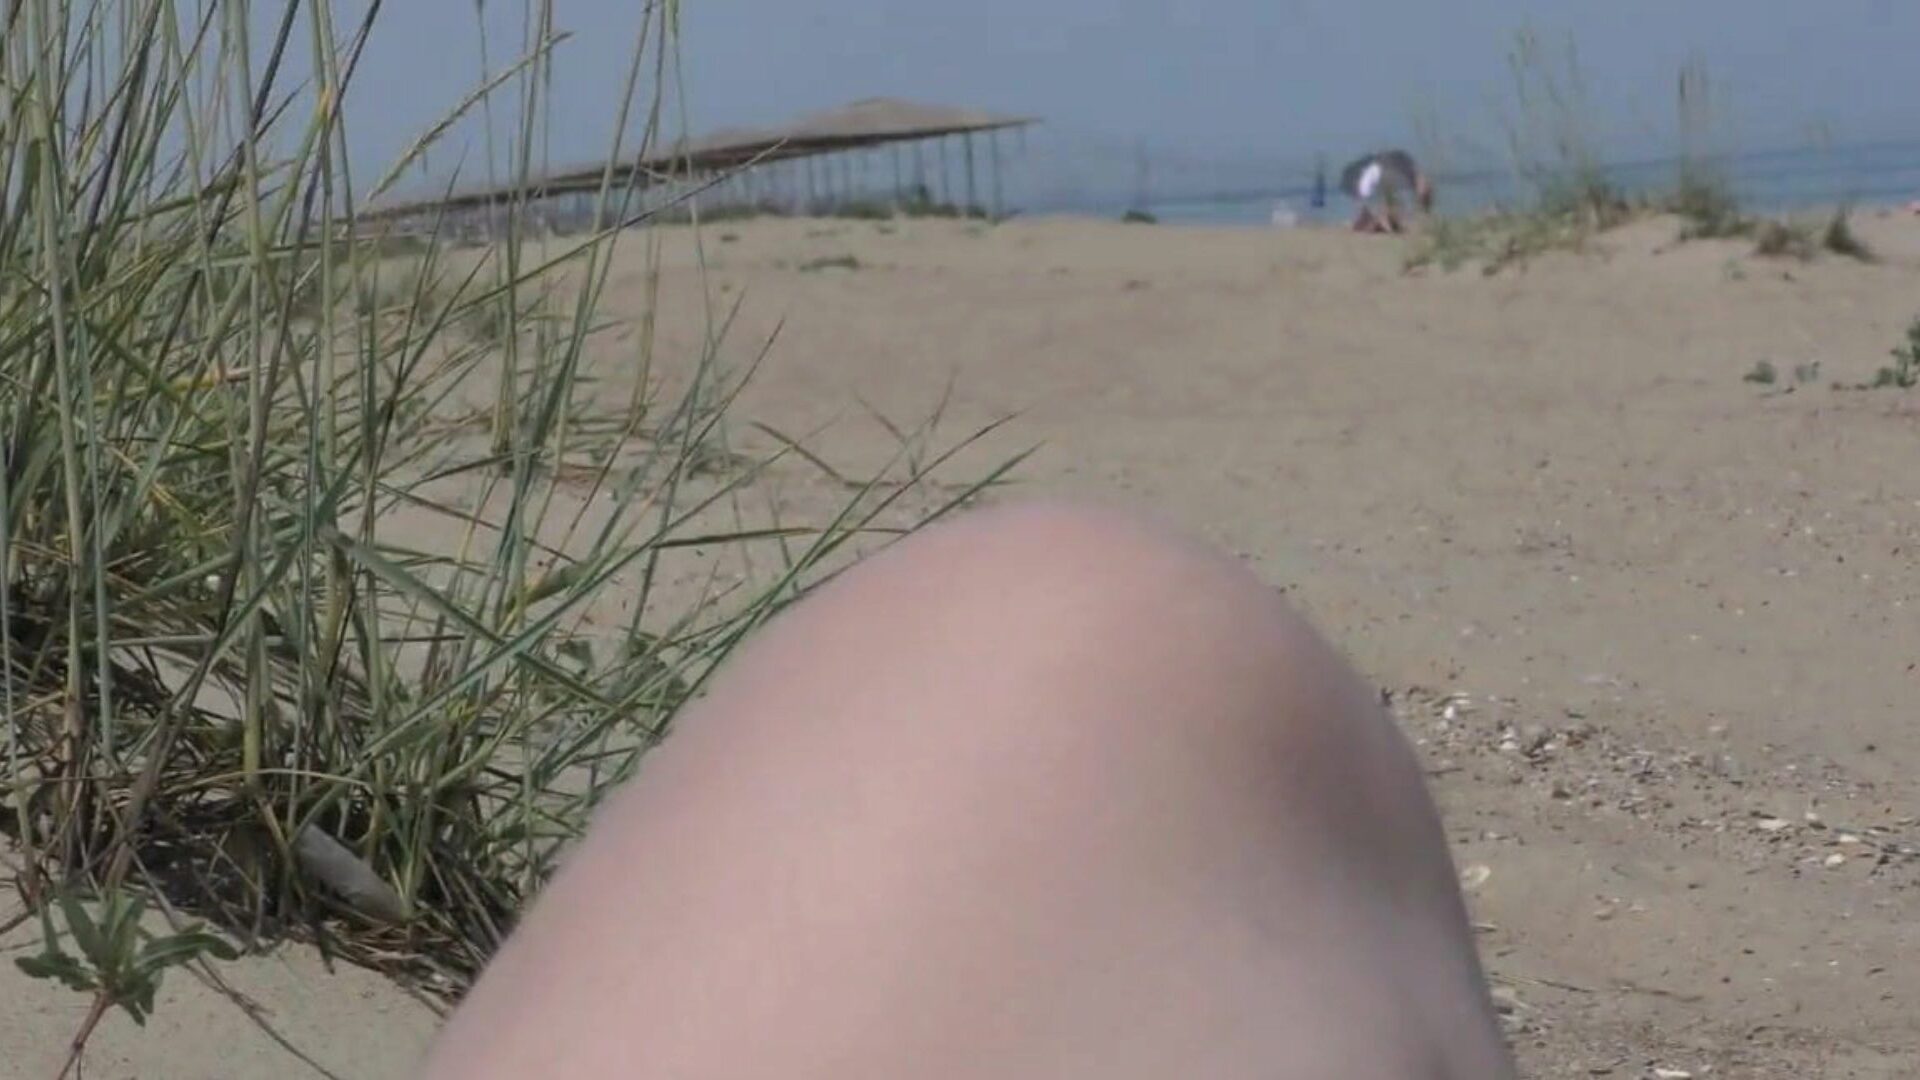 毛茸茸的成熟在海滩上的第二部分免费高清色情60：xhamster观看毛茸茸的成熟在海滩上的第二部分视频在xhamster上，巨大的高清他妈的管网页上有大量的免费母亲，我想他妈的妈妈和公共裸体色情影片